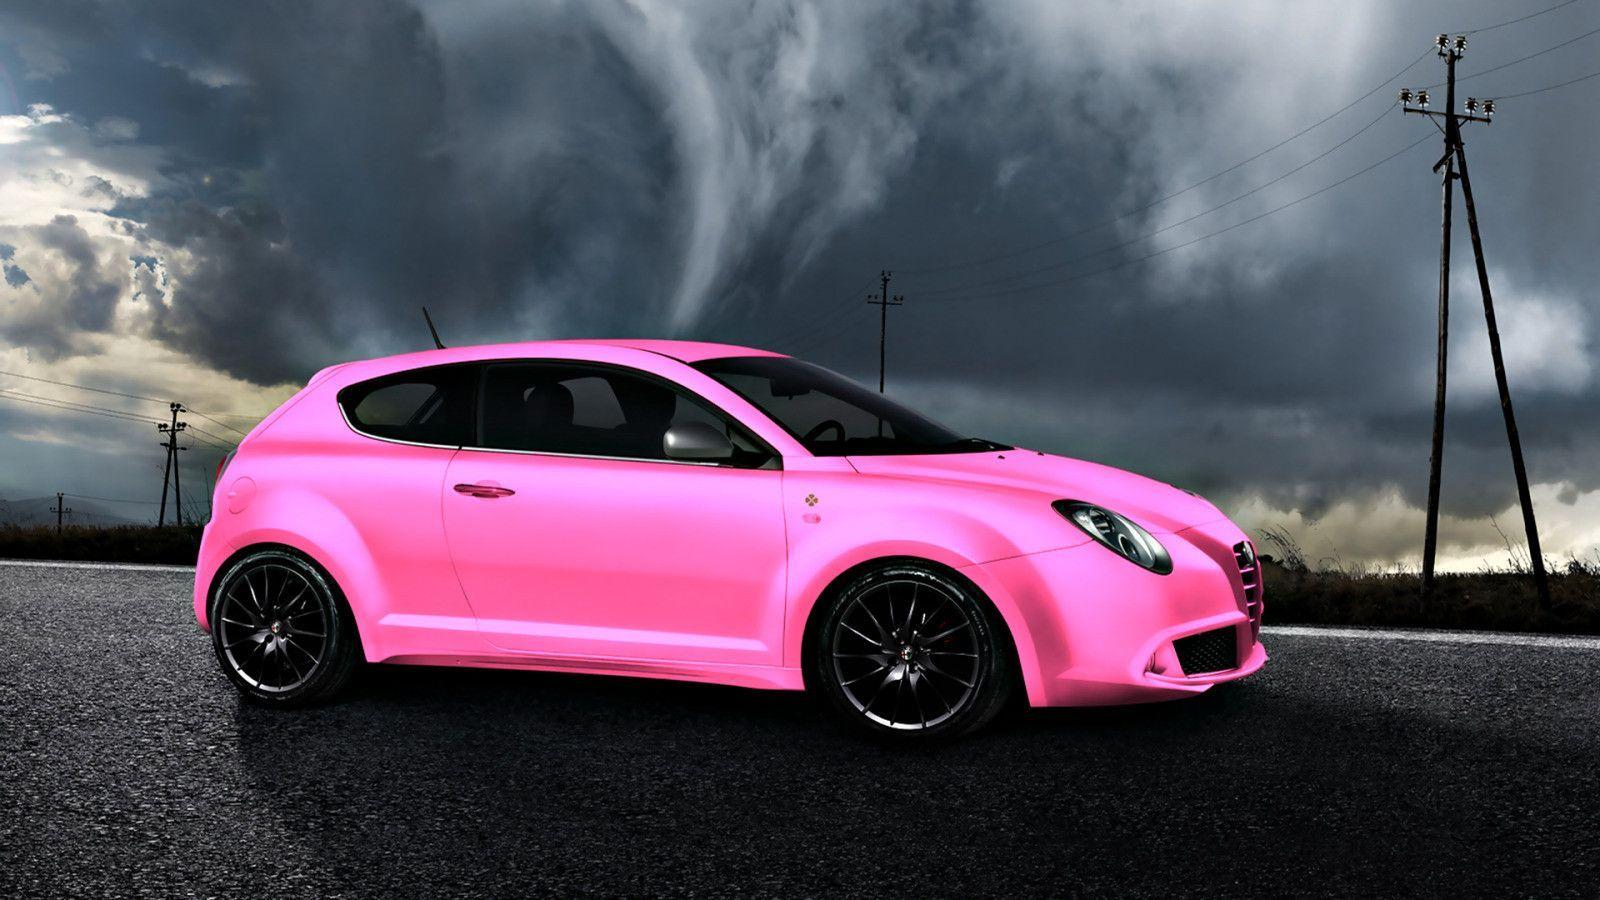 Pink Car widescreen wallpaper. Wide